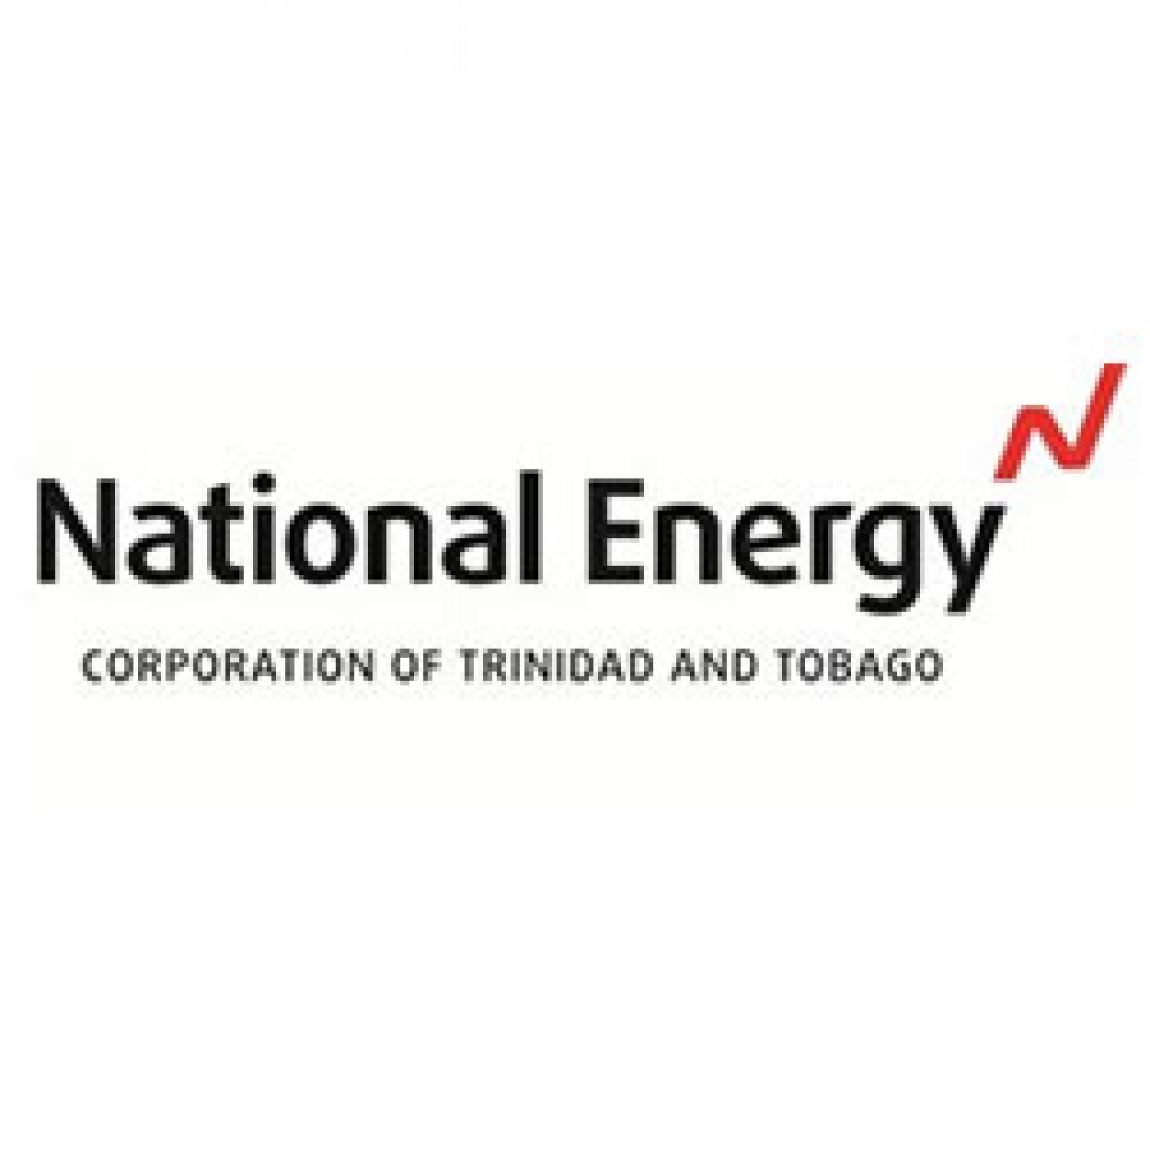 NATIONAL-ENERGY.jpg